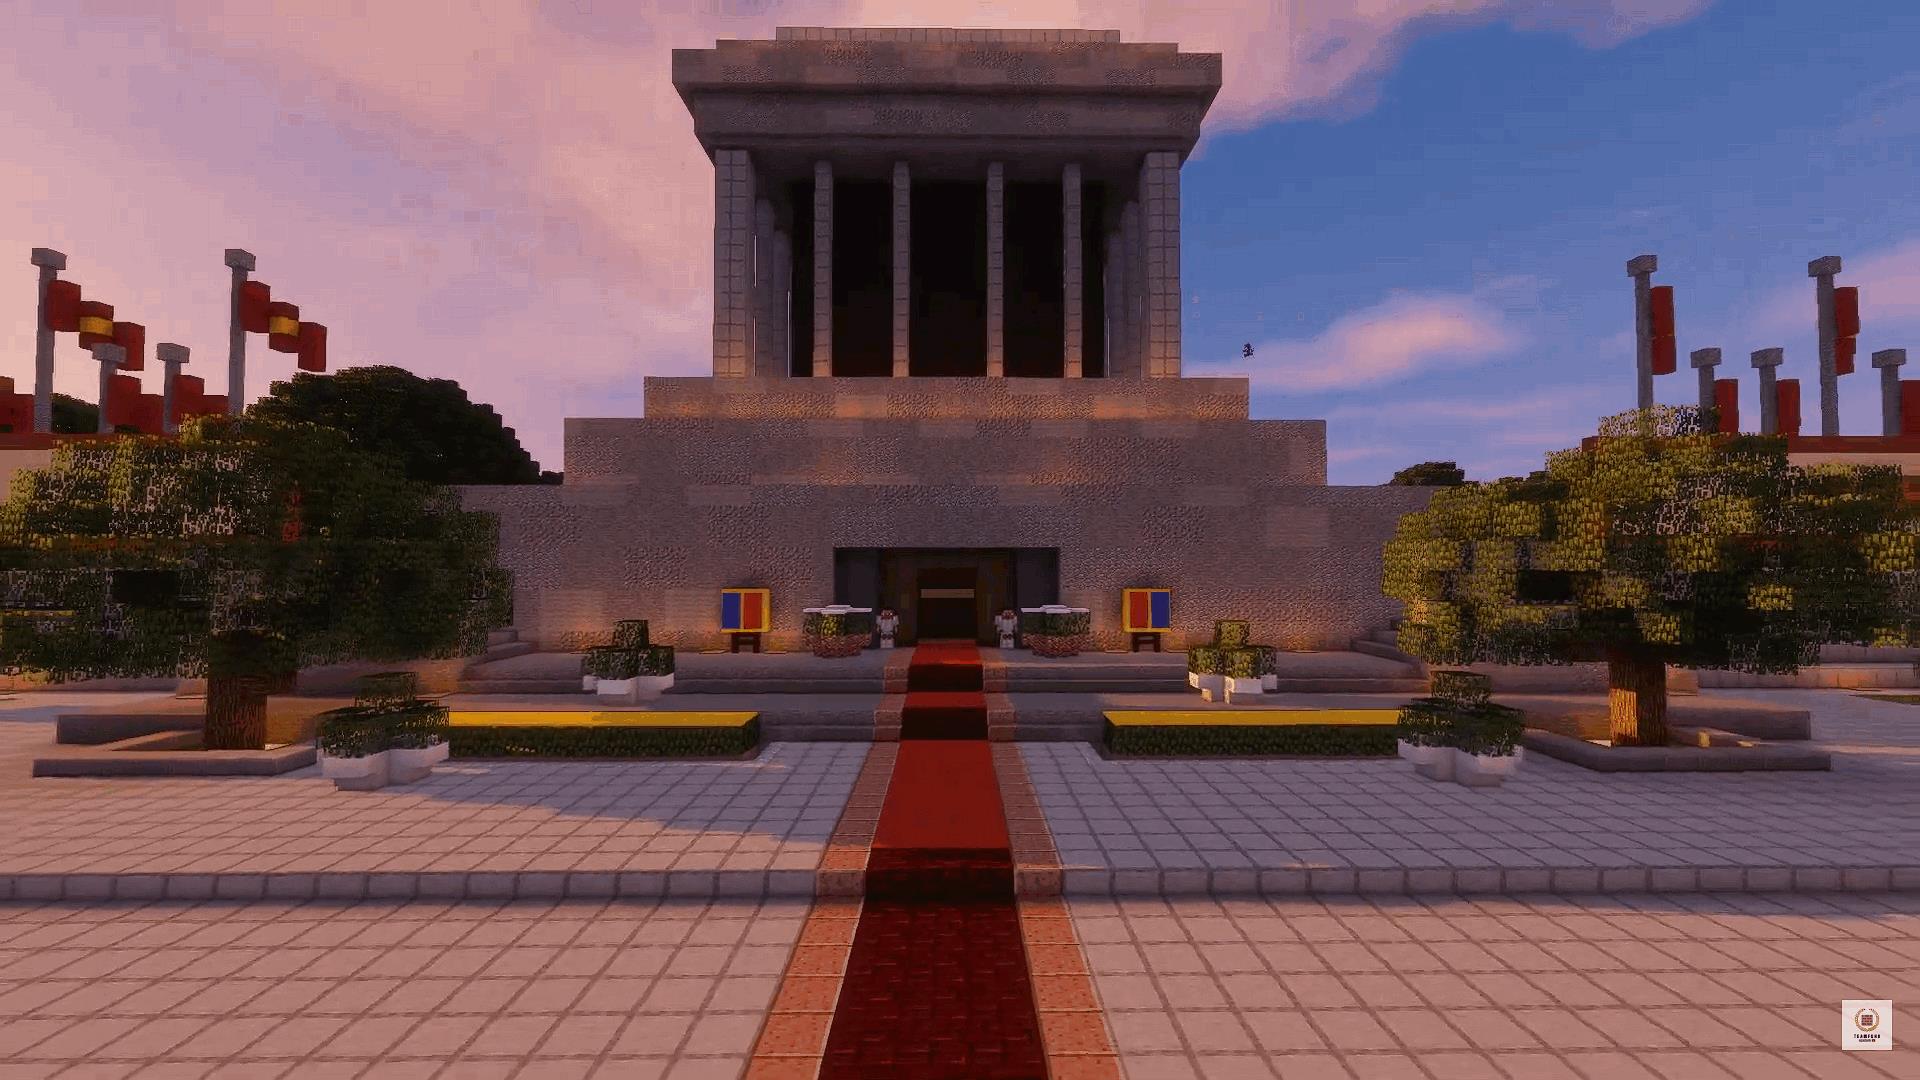 Minecraft Lăng Bác: Tham gia vào game Minecraft và xây dựng đền Lăng Bác theo cách của riêng bạn. Nhận biết các chi tiết đặc trưng của kiến trúc quốc gia và khám phá tác phẩm nghệ thuật nằm trên các bức tường của đền.